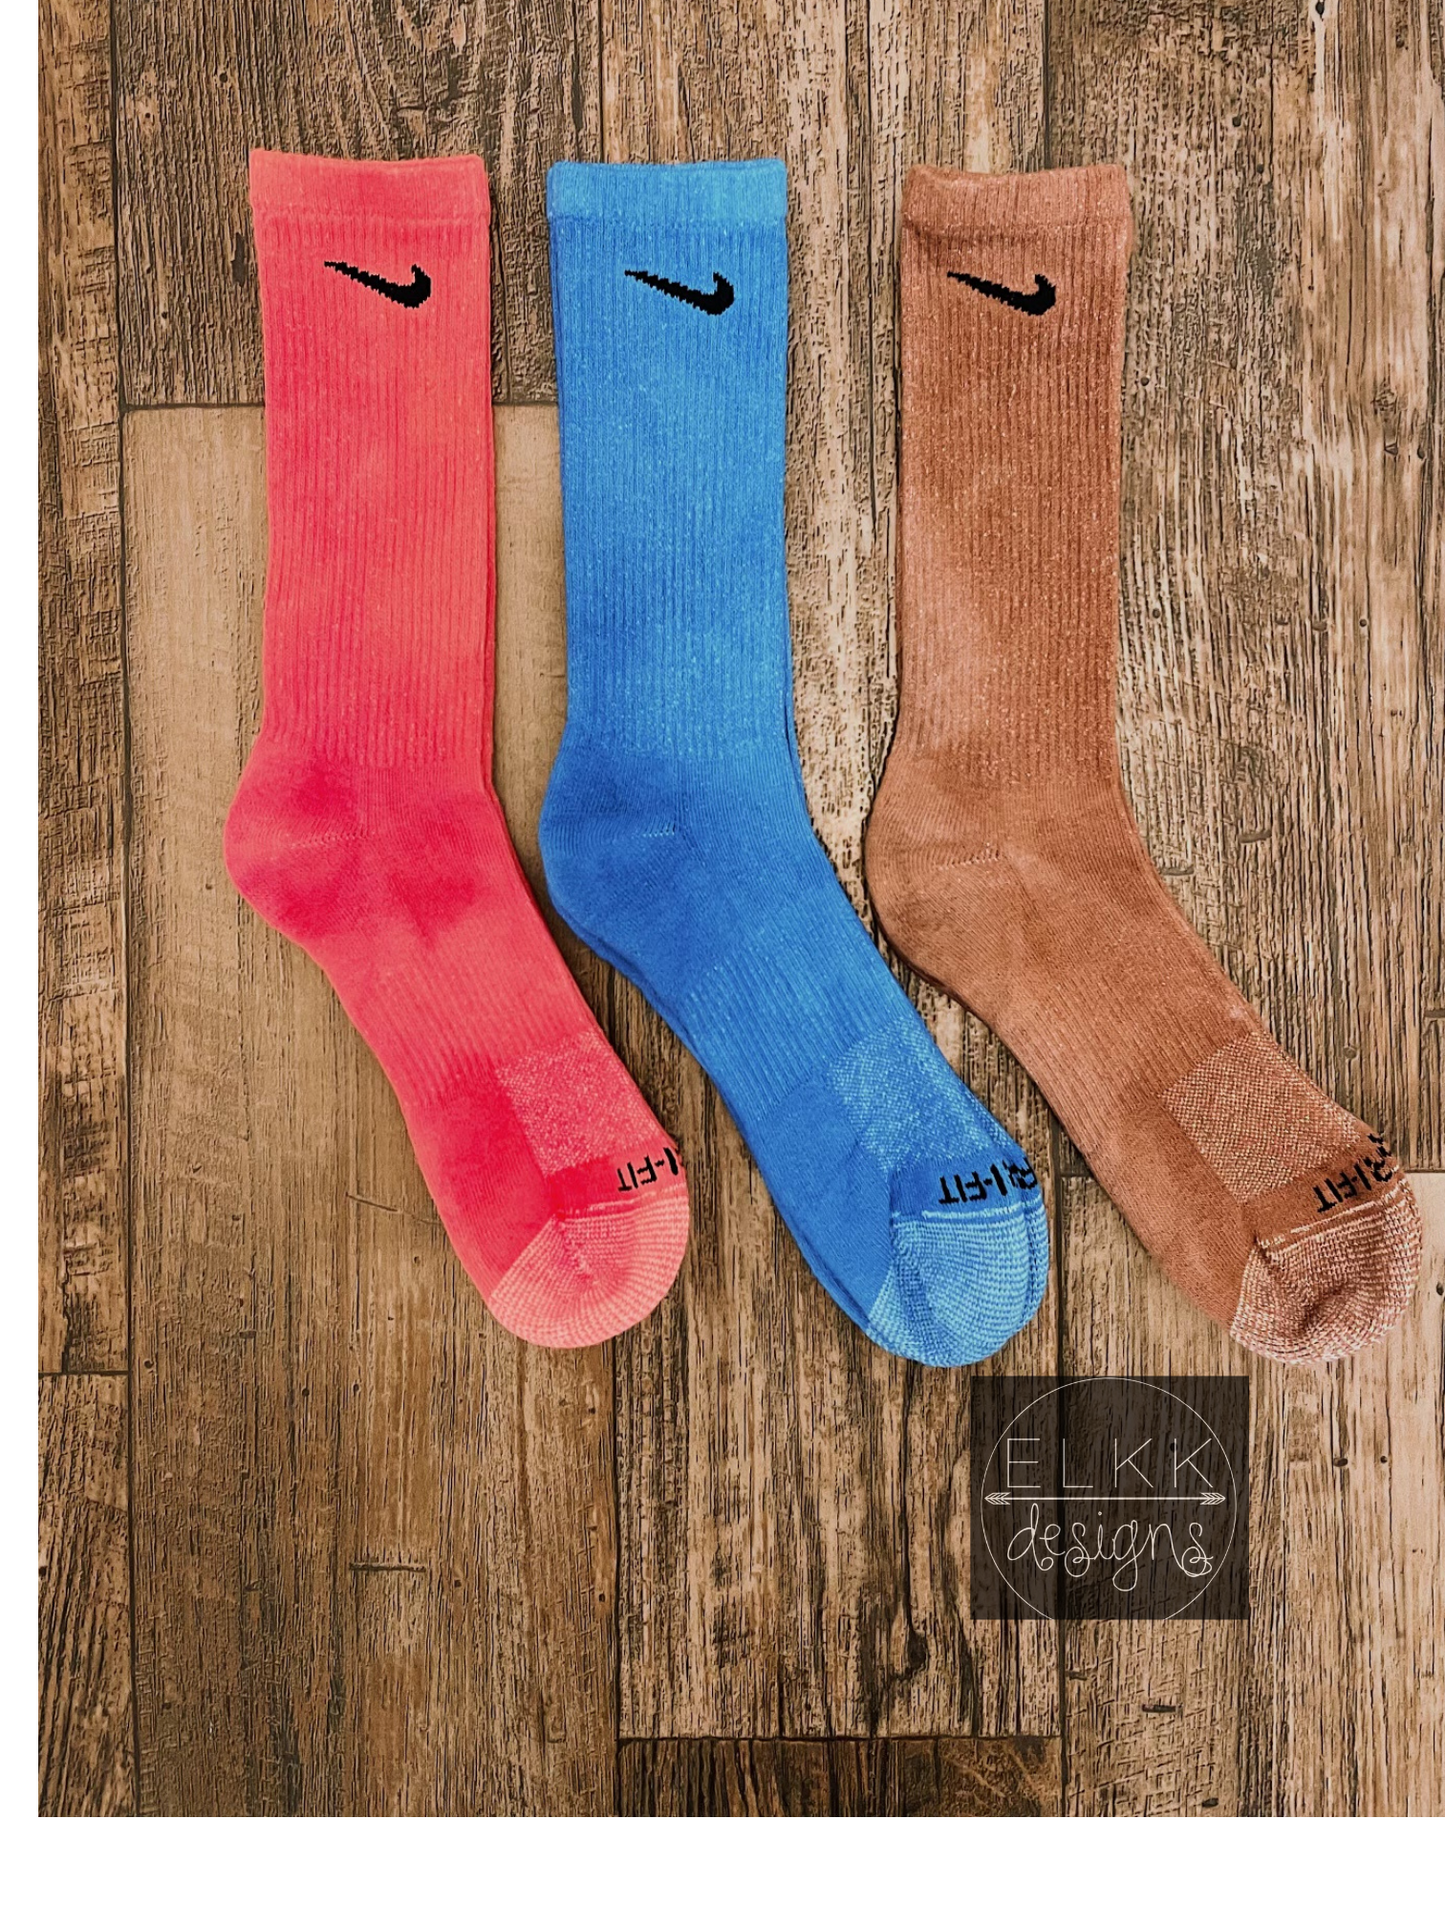 Tye dye socks